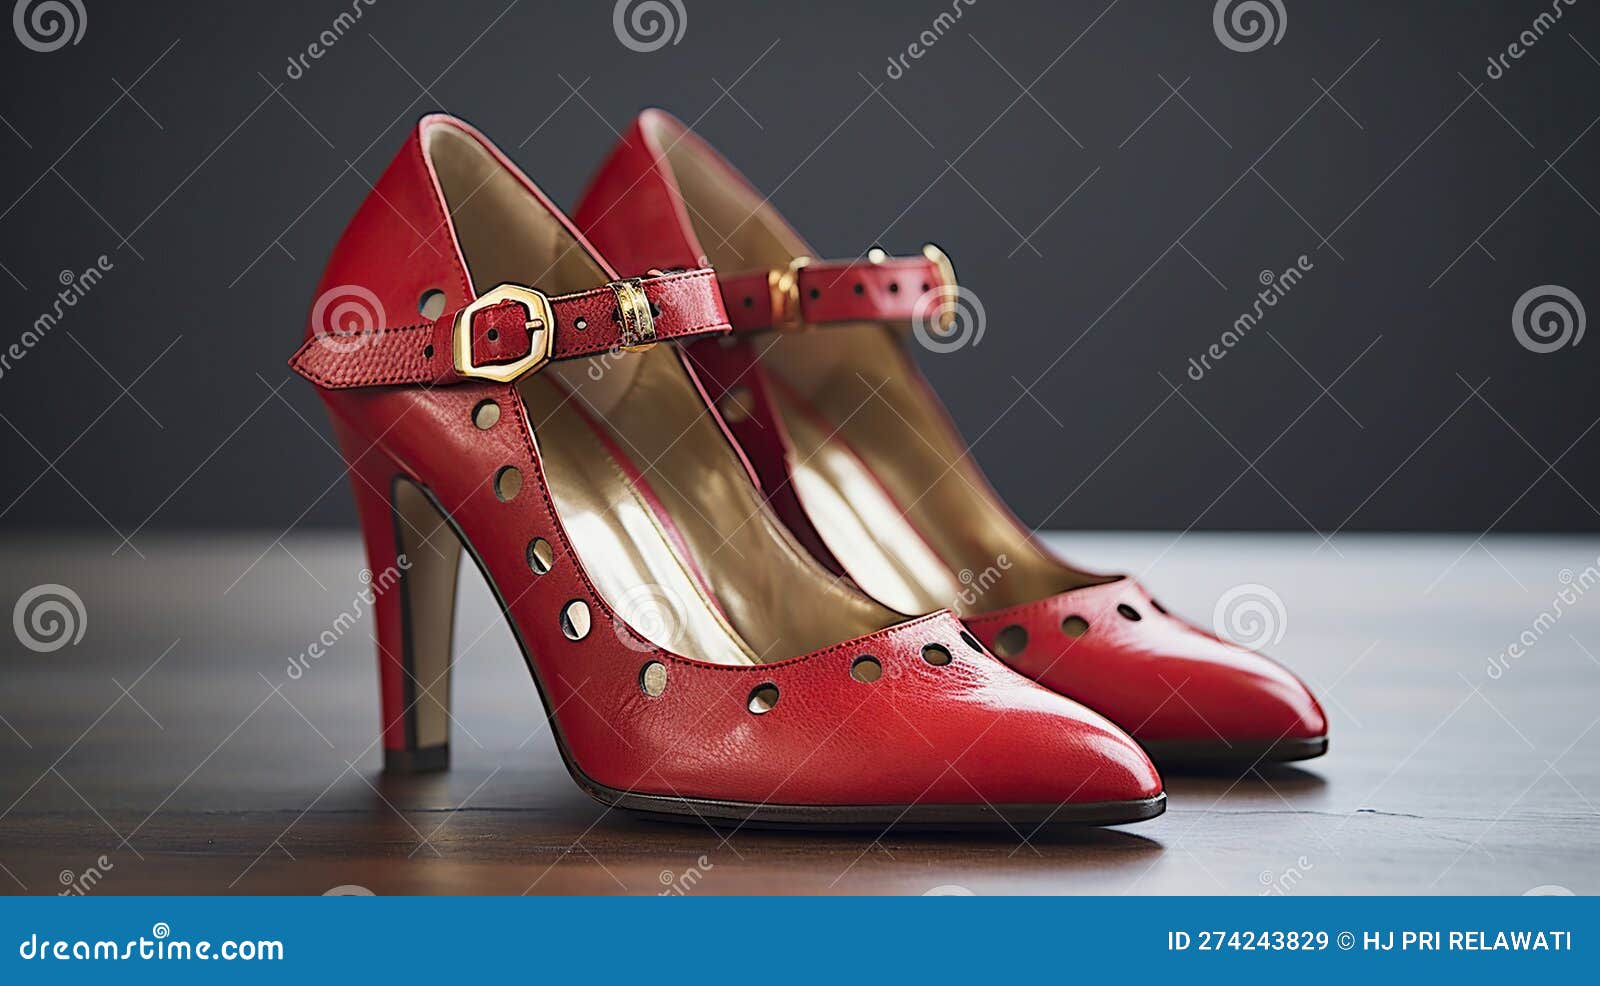 Dance Queen. Handmade blue leather shoes heels dance shoes – ELF